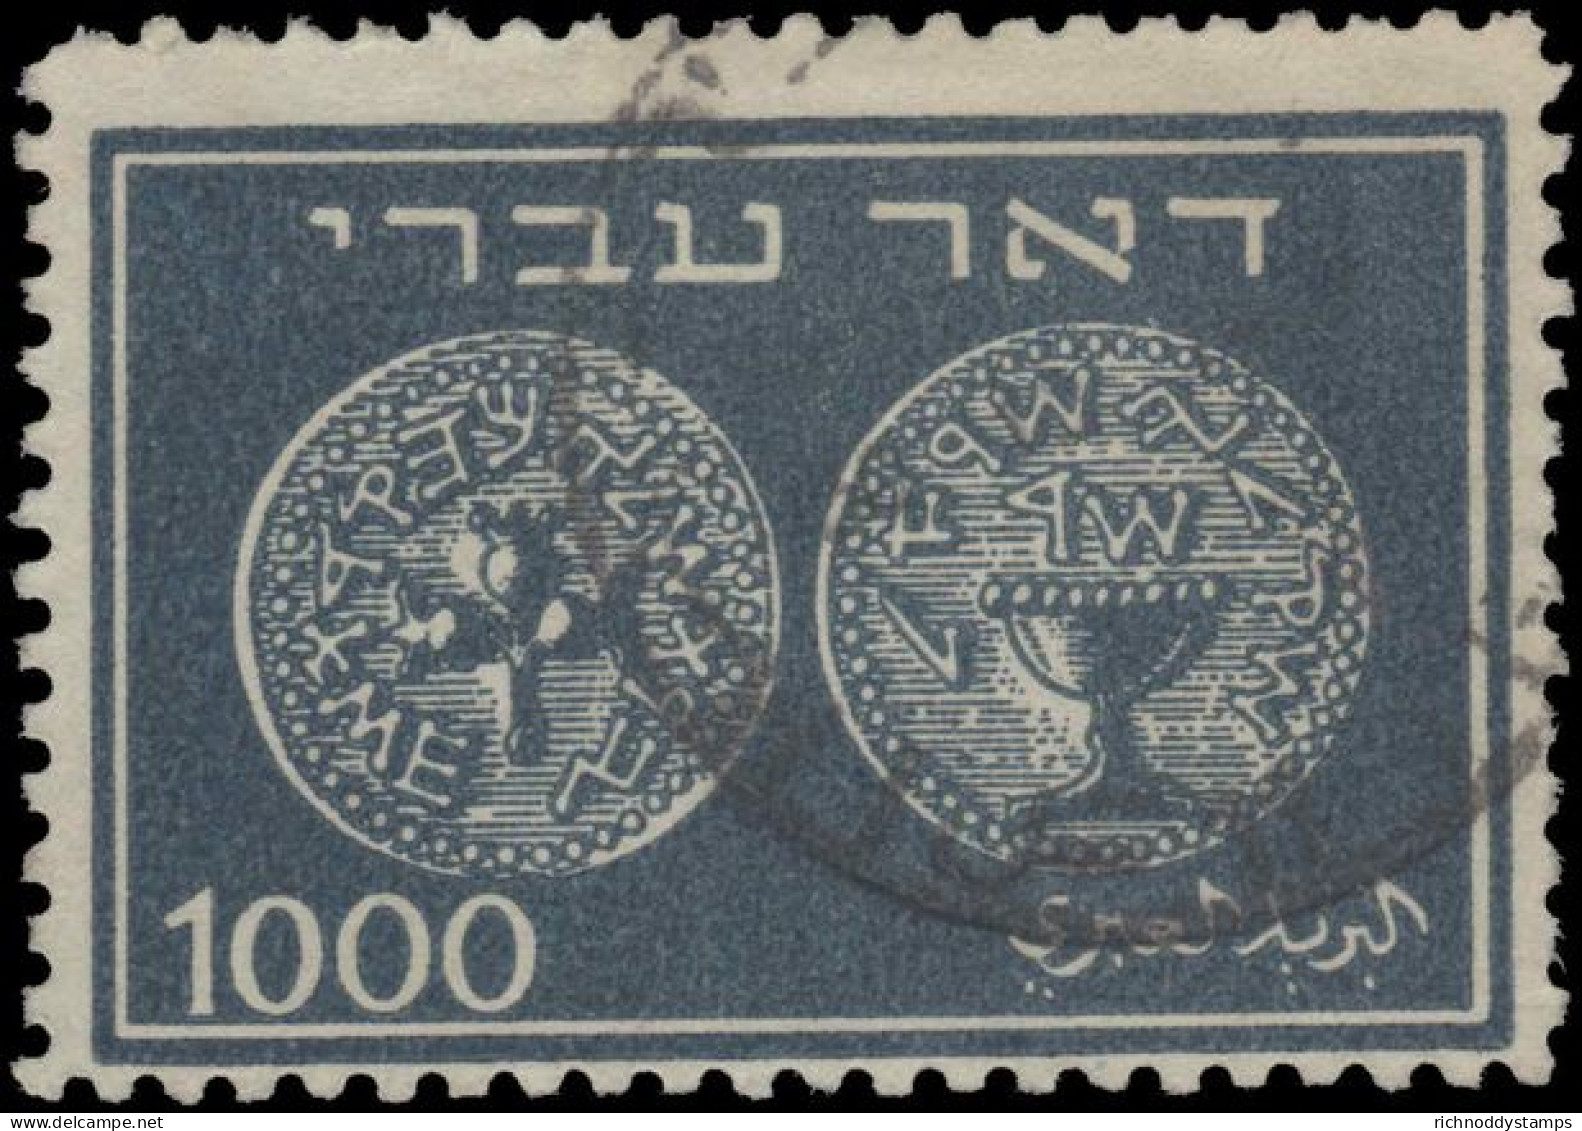 Israel 1948 1000m Coins Perf 11 Fine Used. - Usati (senza Tab)